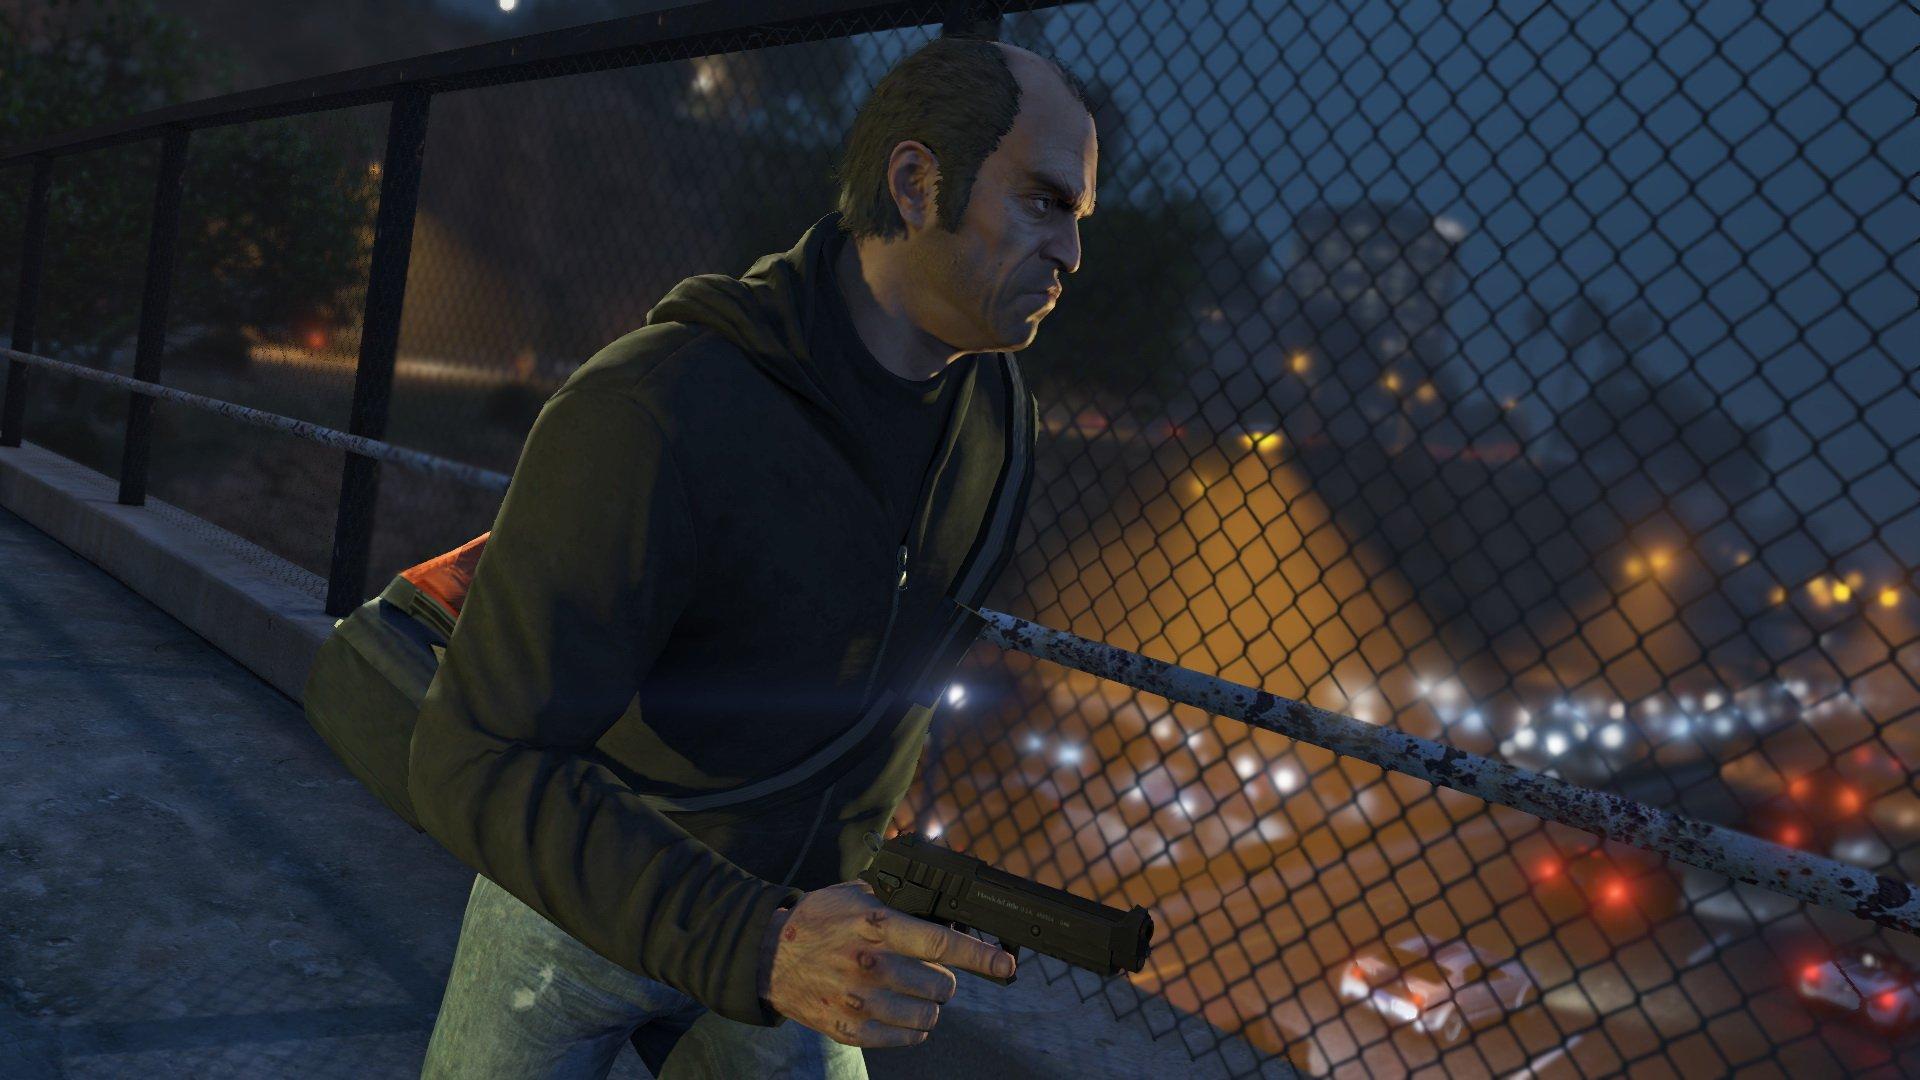 Gta 5 Grand Theft Auto V Premium Edition For Ps4 Gamestop